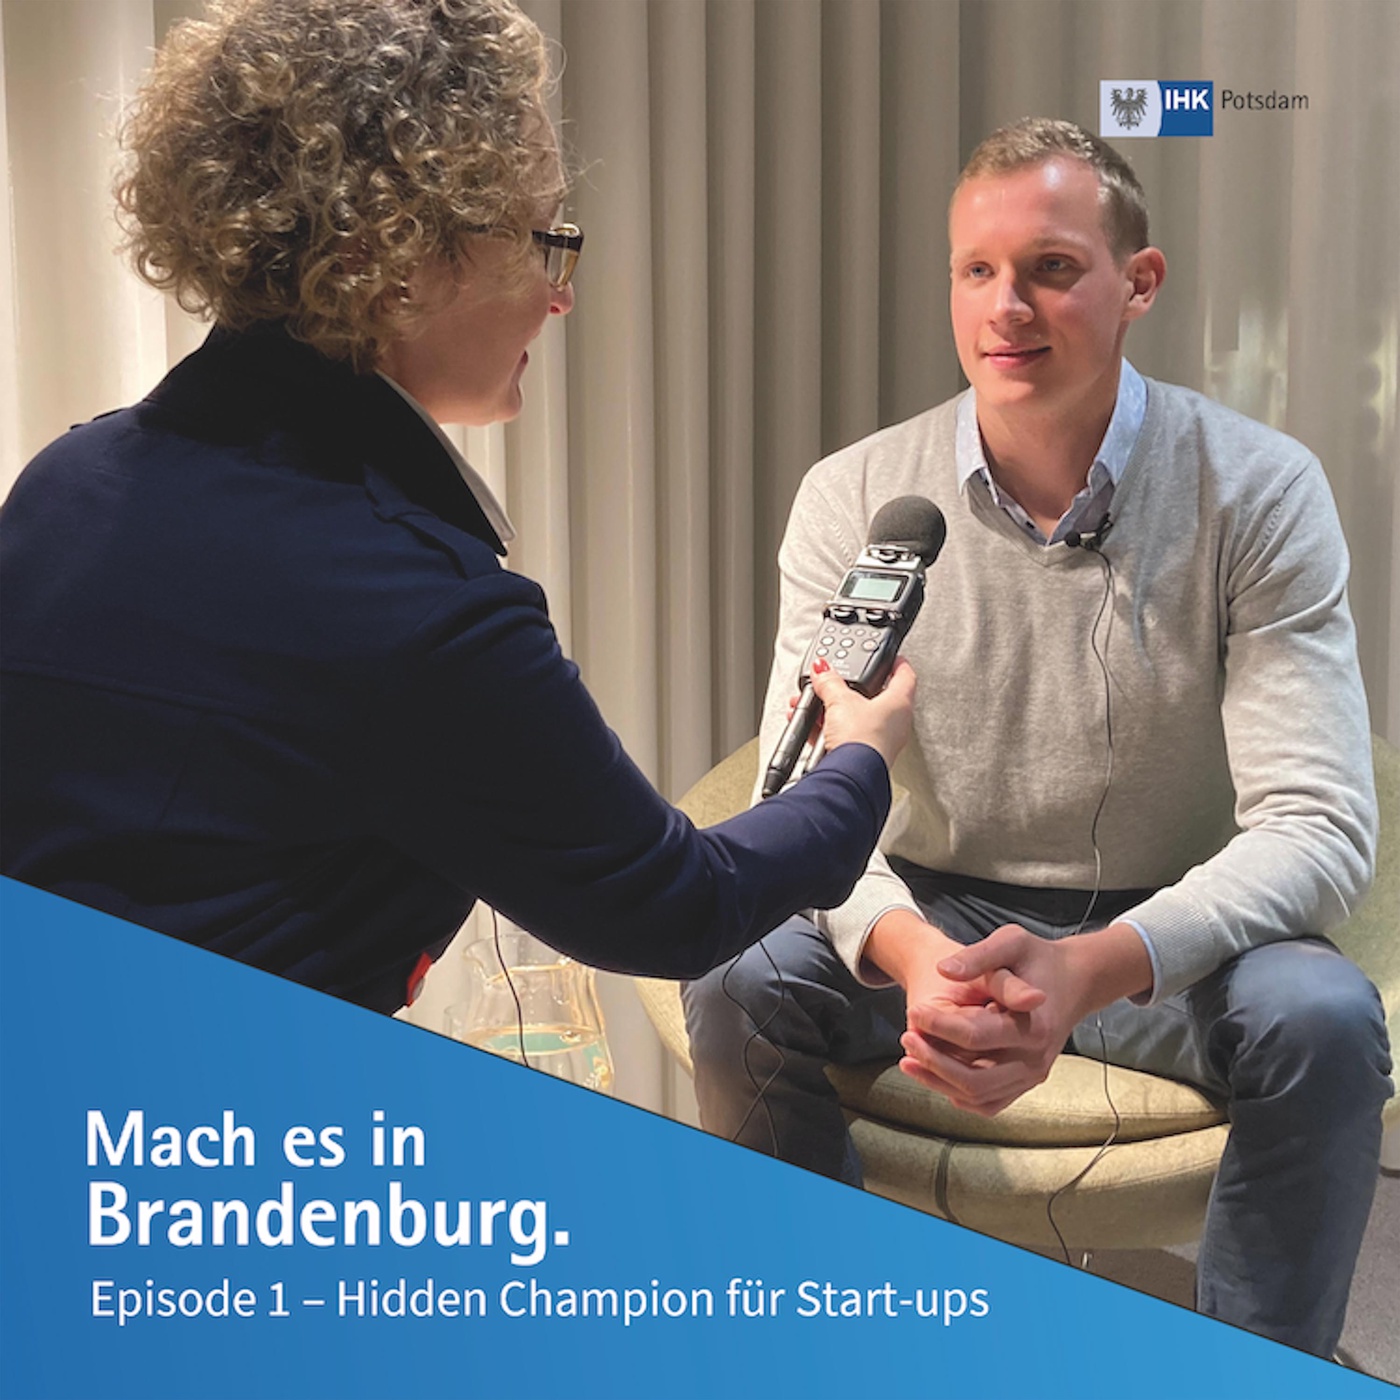 Hidden Champion für Start-ups |  Mach es in Brandenburg (1)